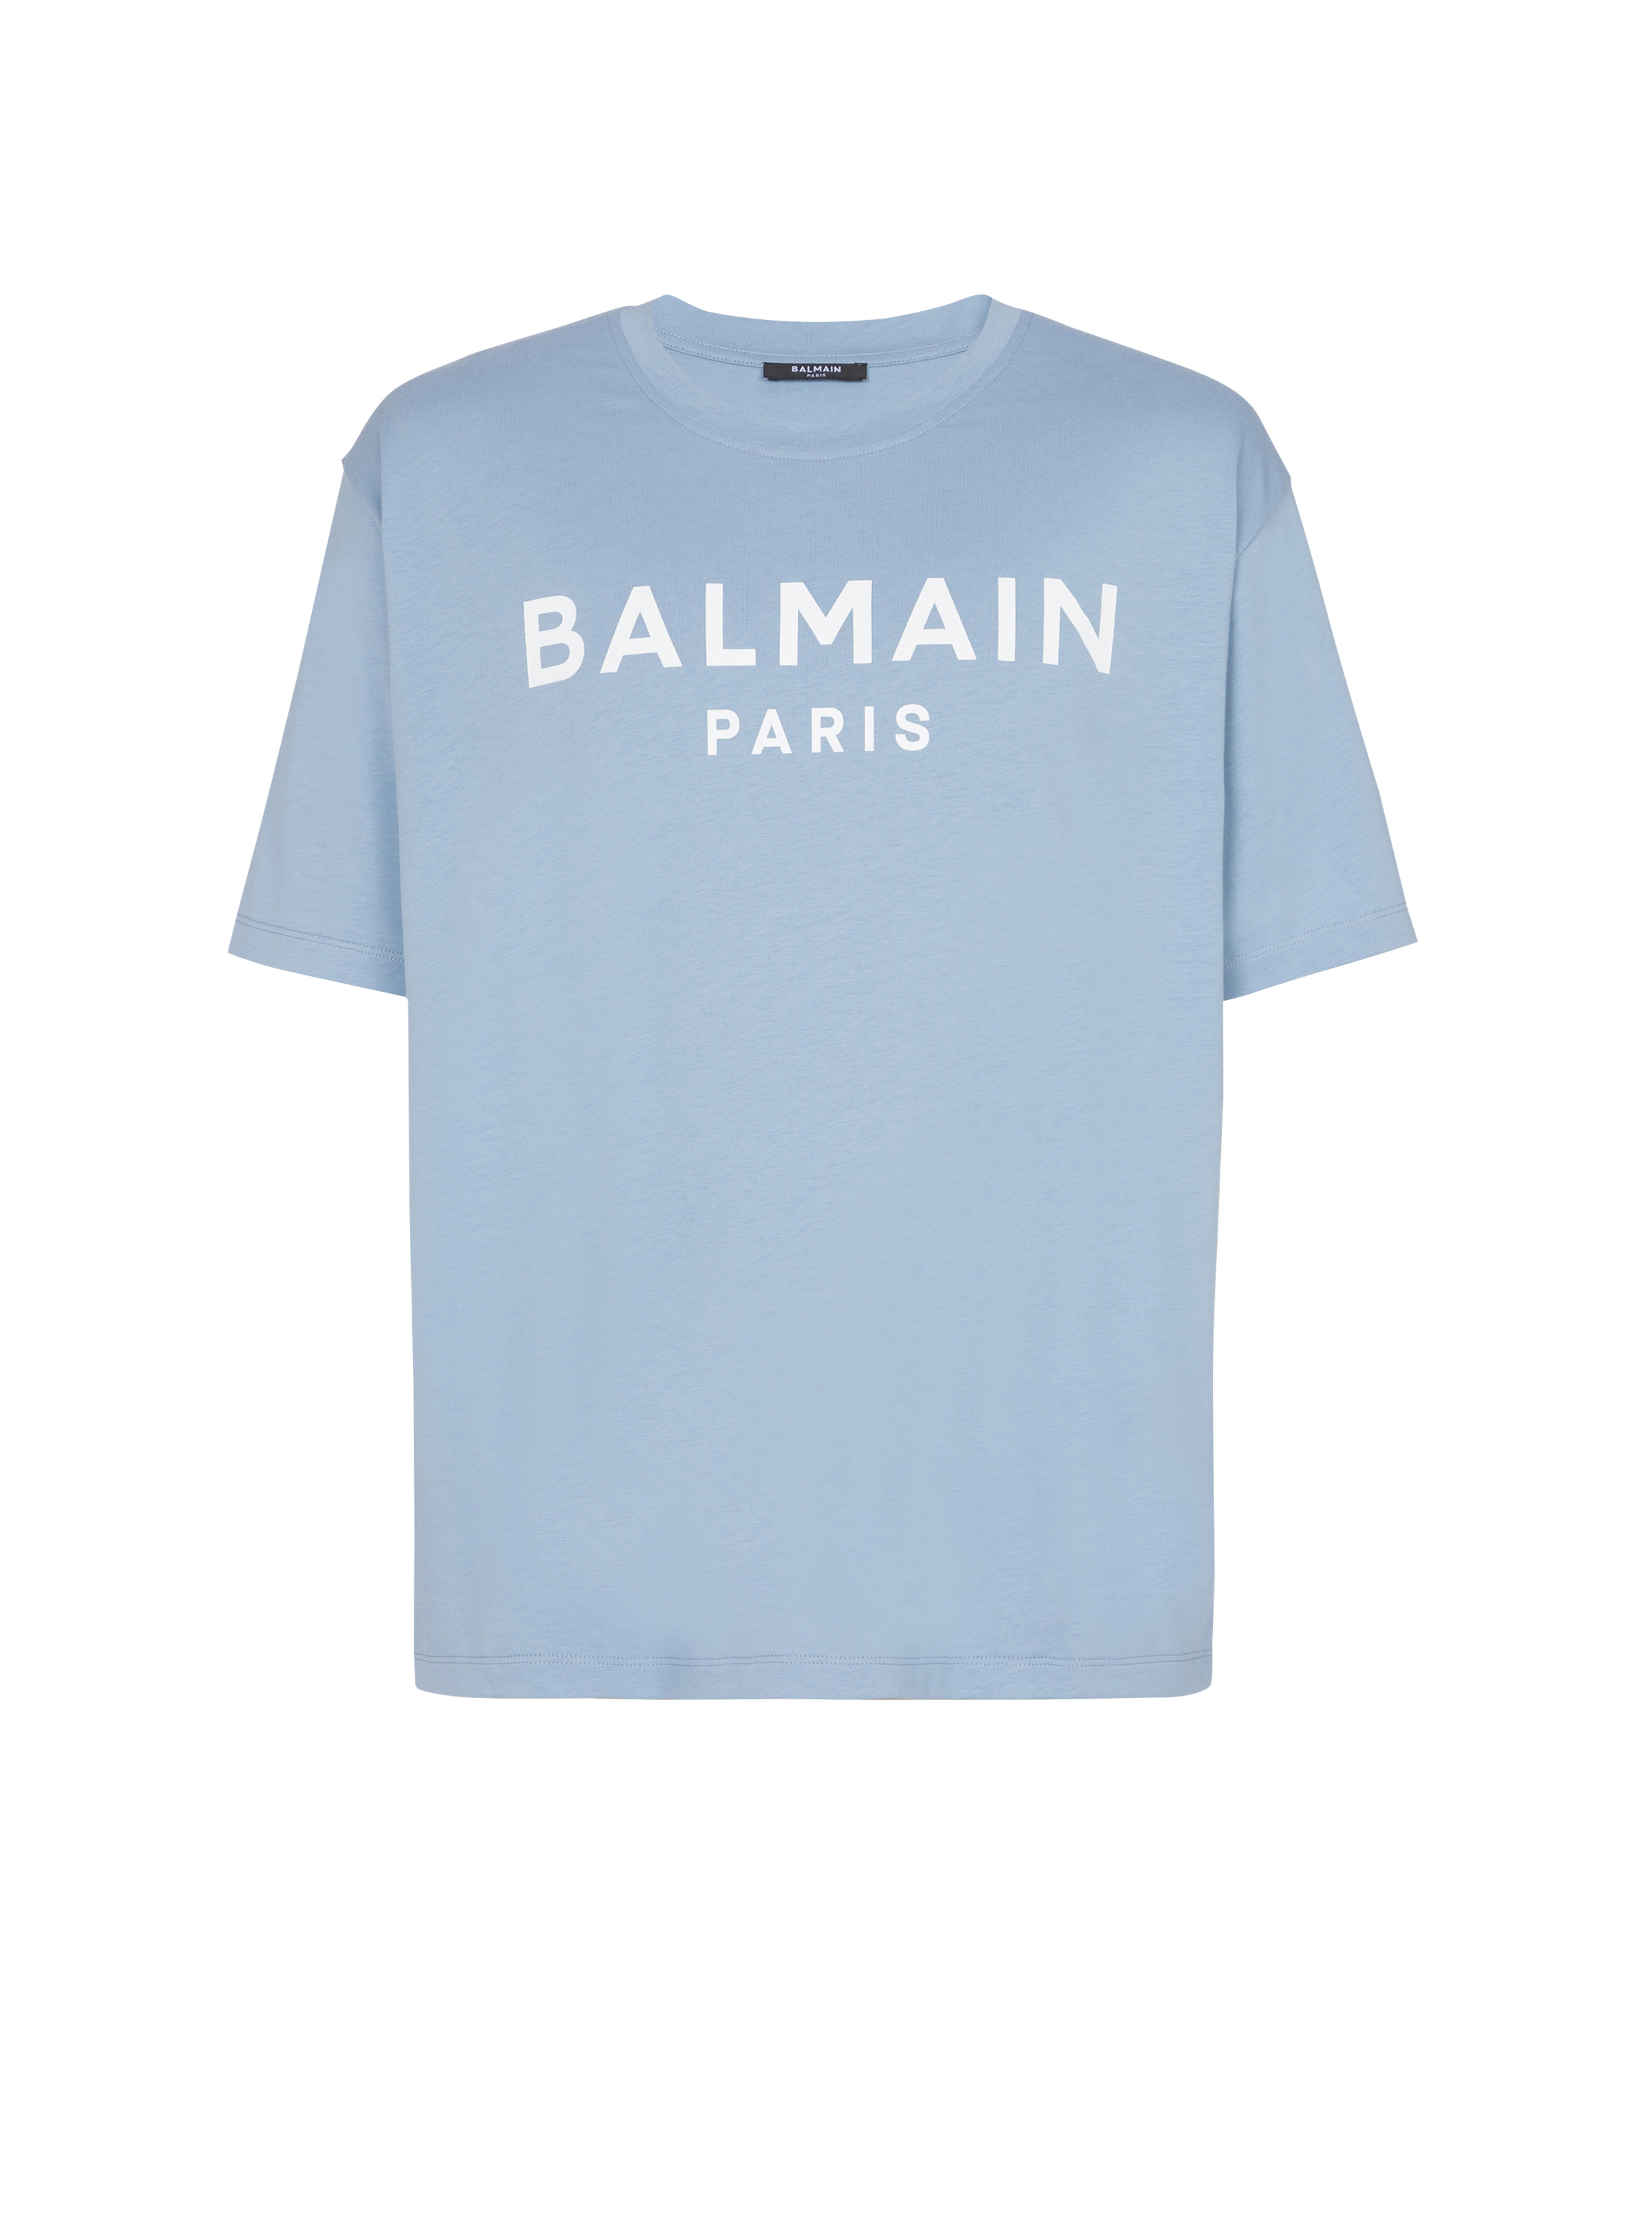 Balmain Paris T-shirt - 1